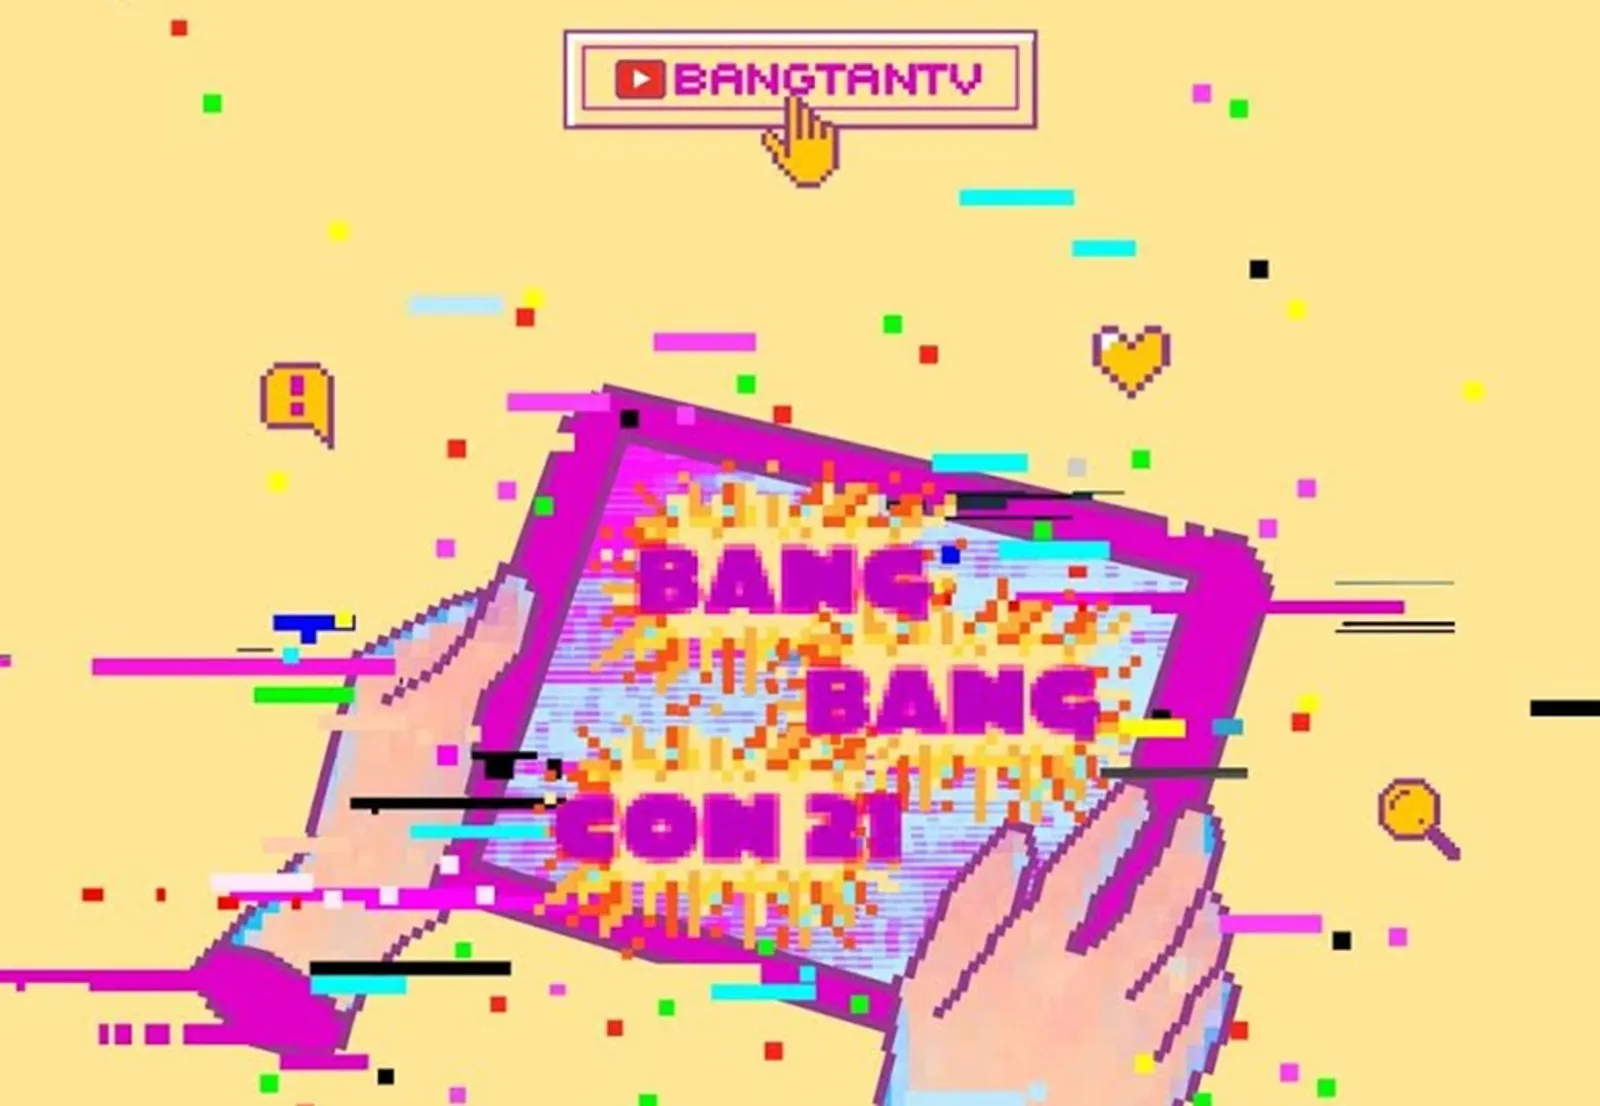 Cetak Rekor, 5 Fakta Kesuksesan Konser BTS 'Bang Bang Con 21'